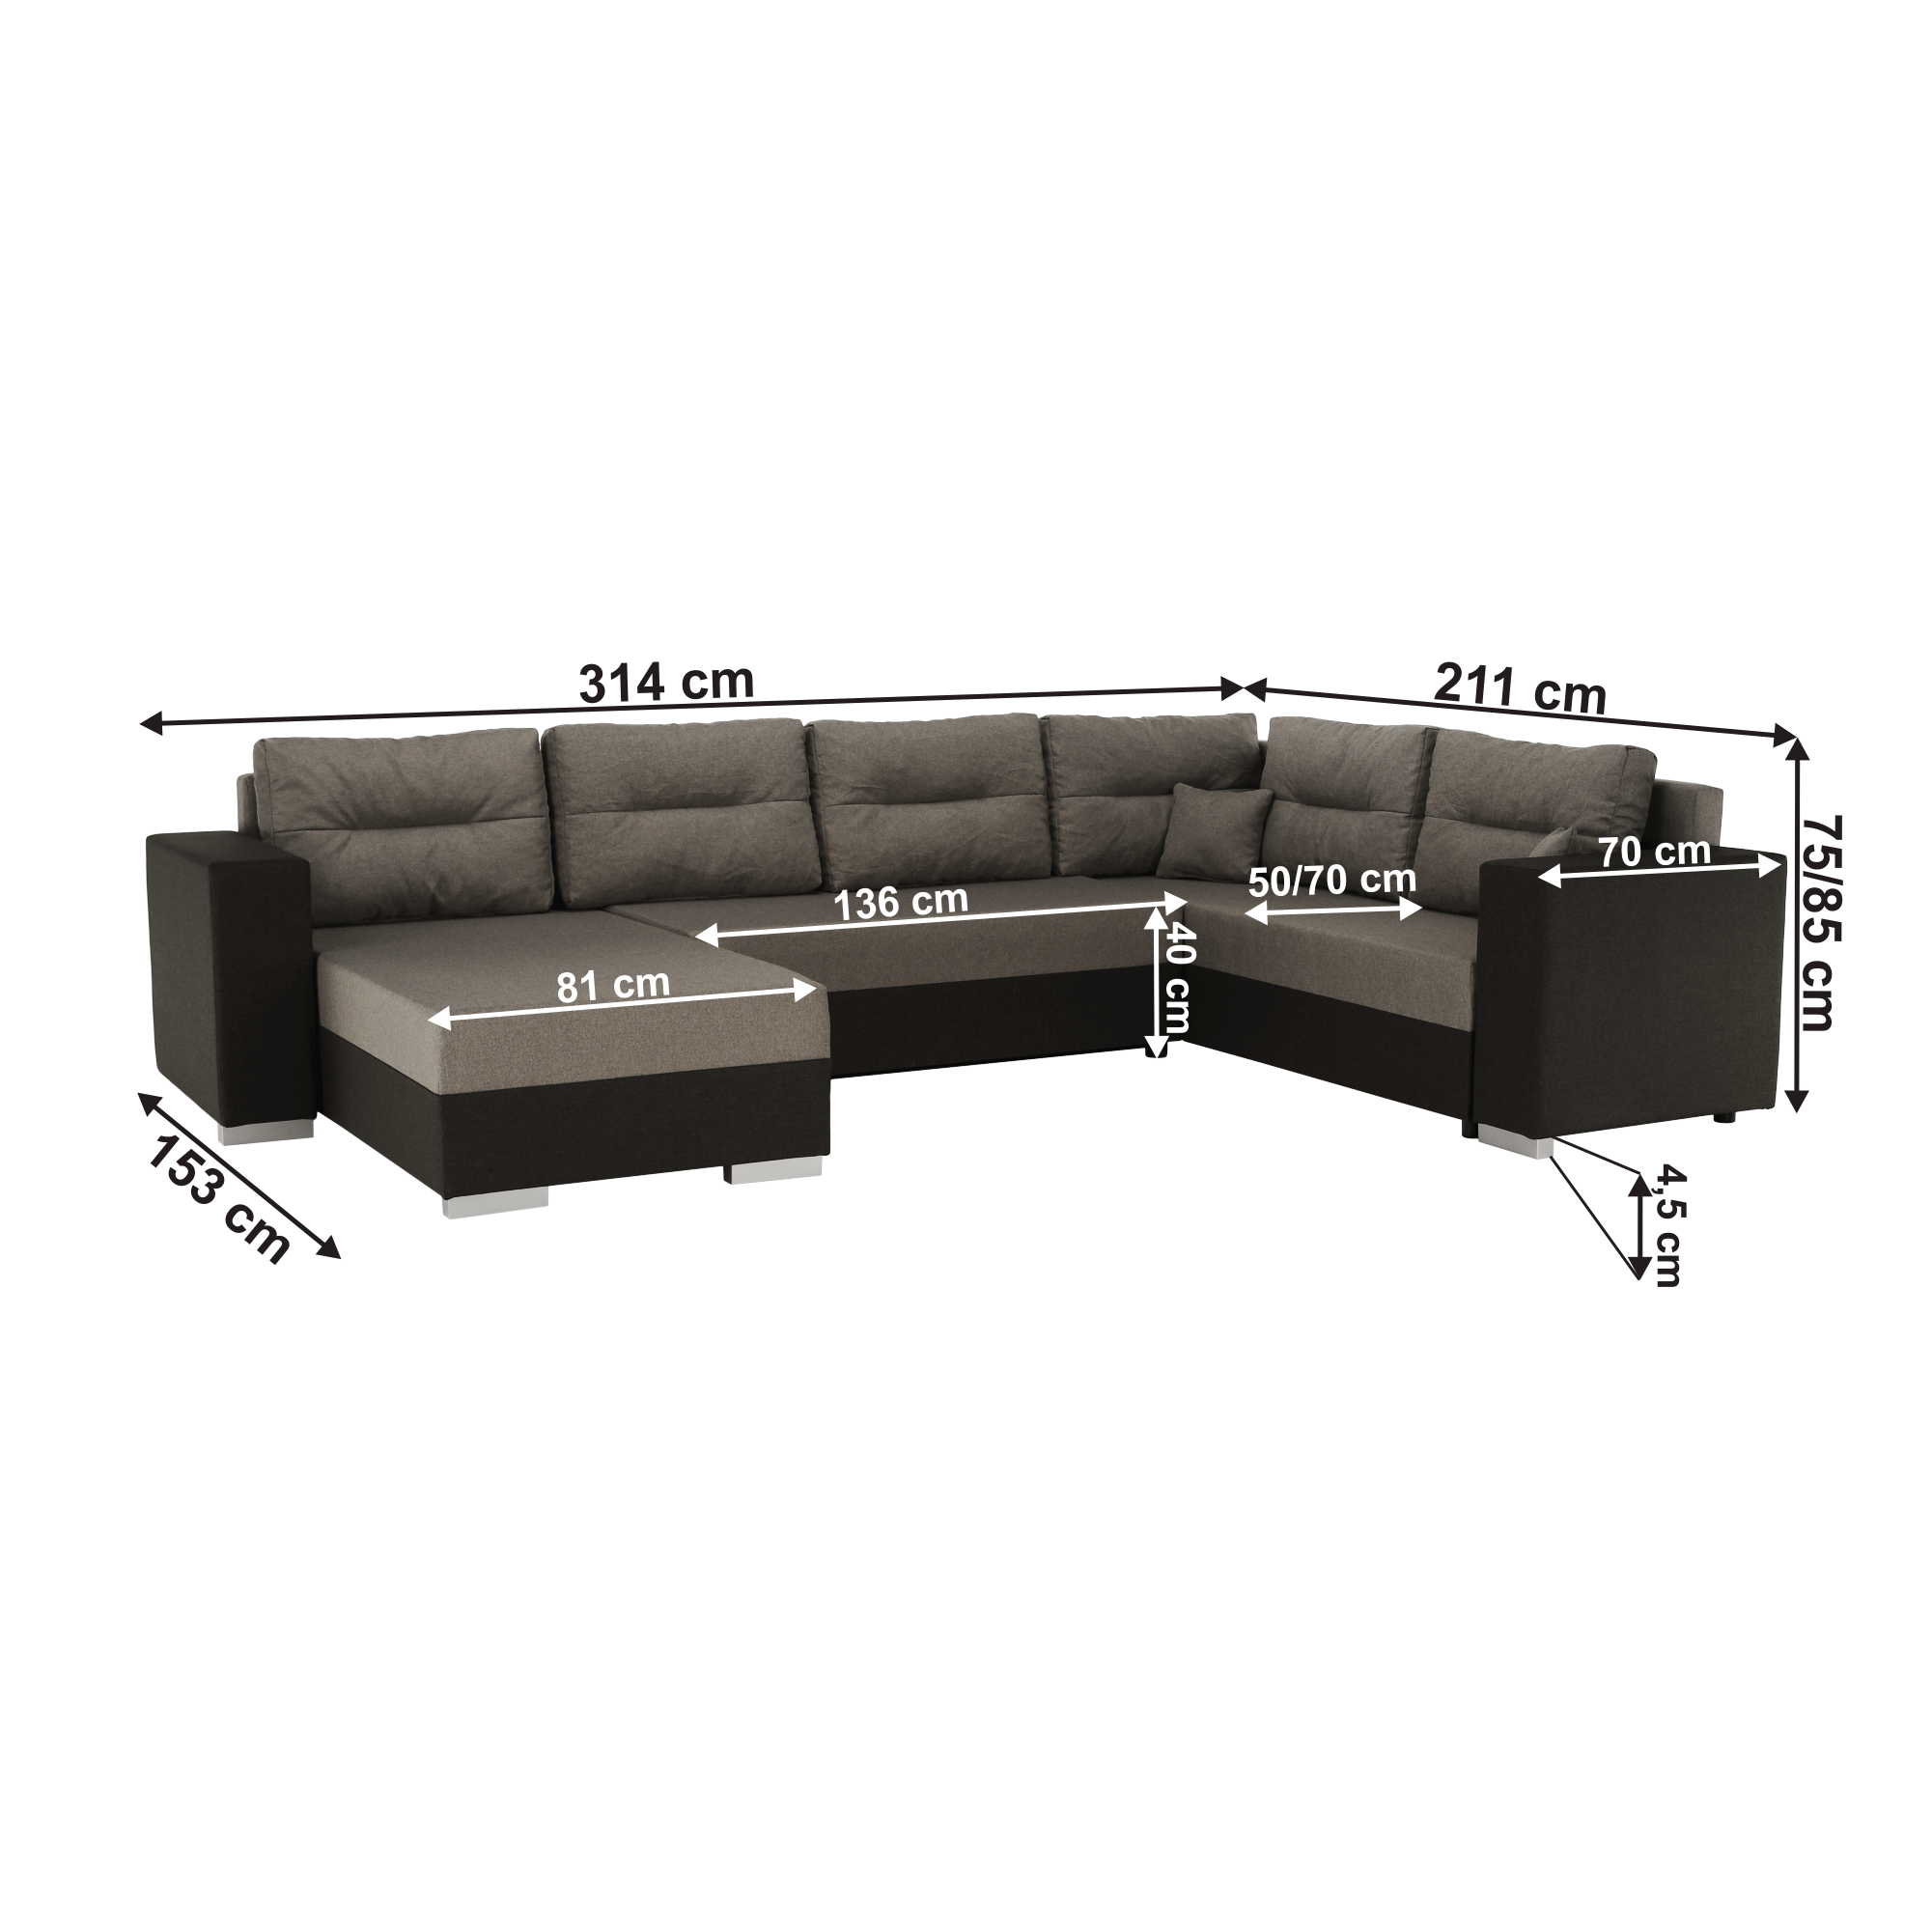 Canapea universală, maro / gri-maro, BRENDA